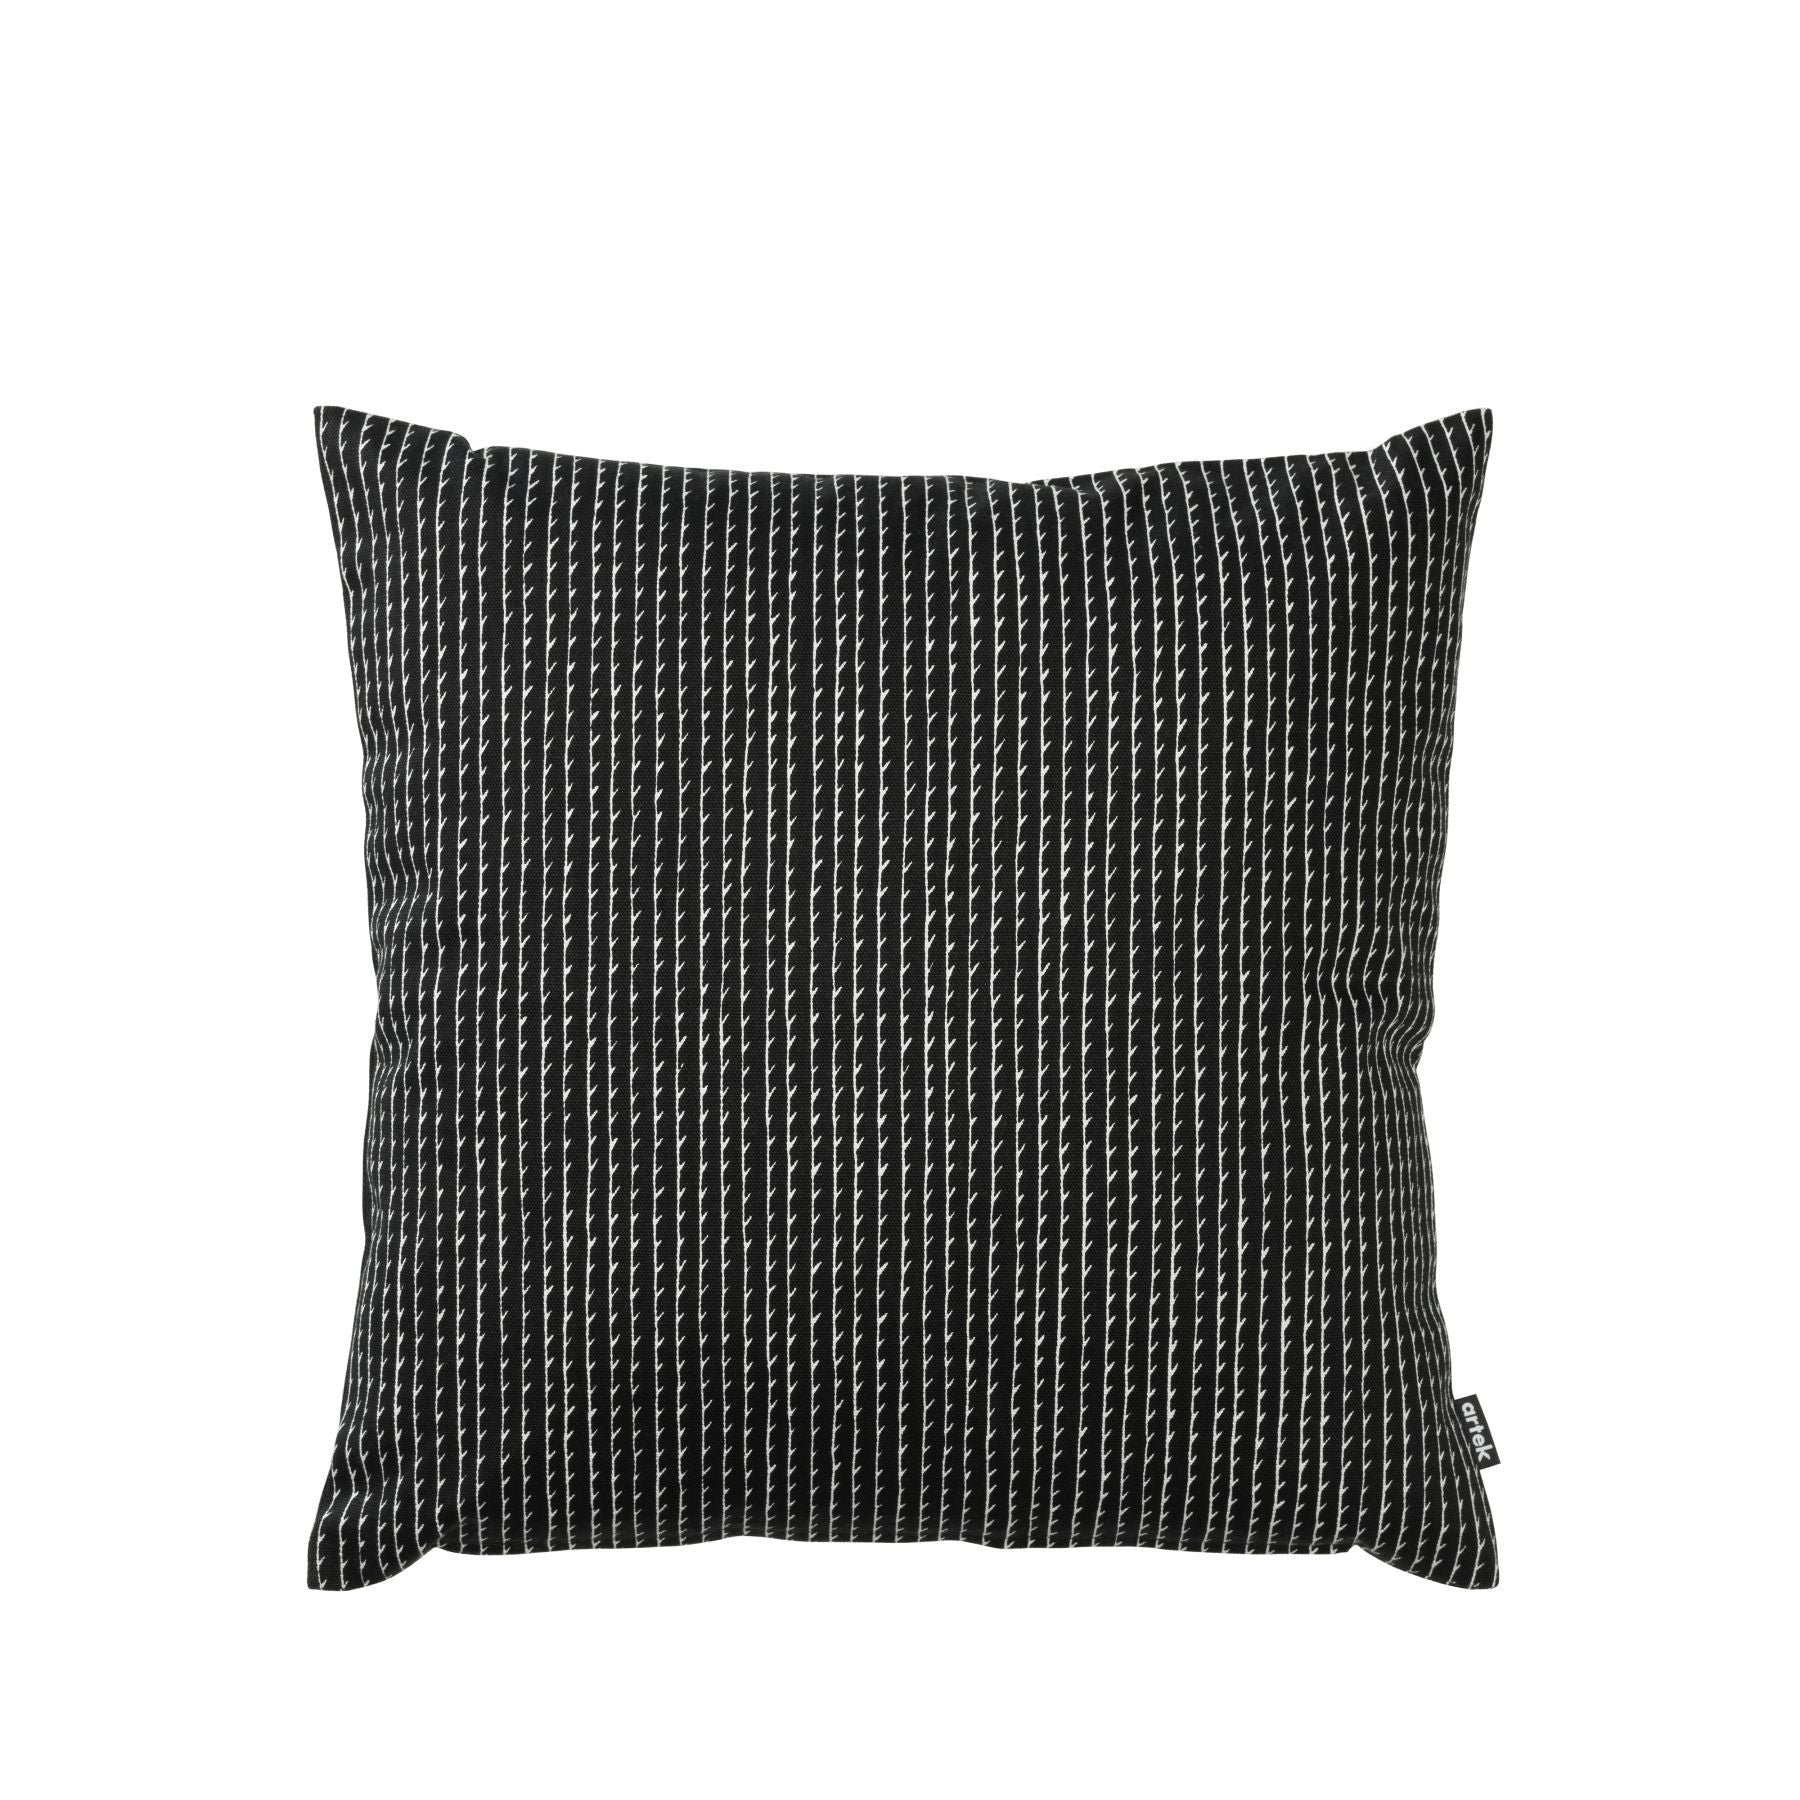 Artek Cushion / Pillow 40x40cm cover Rivi Collection